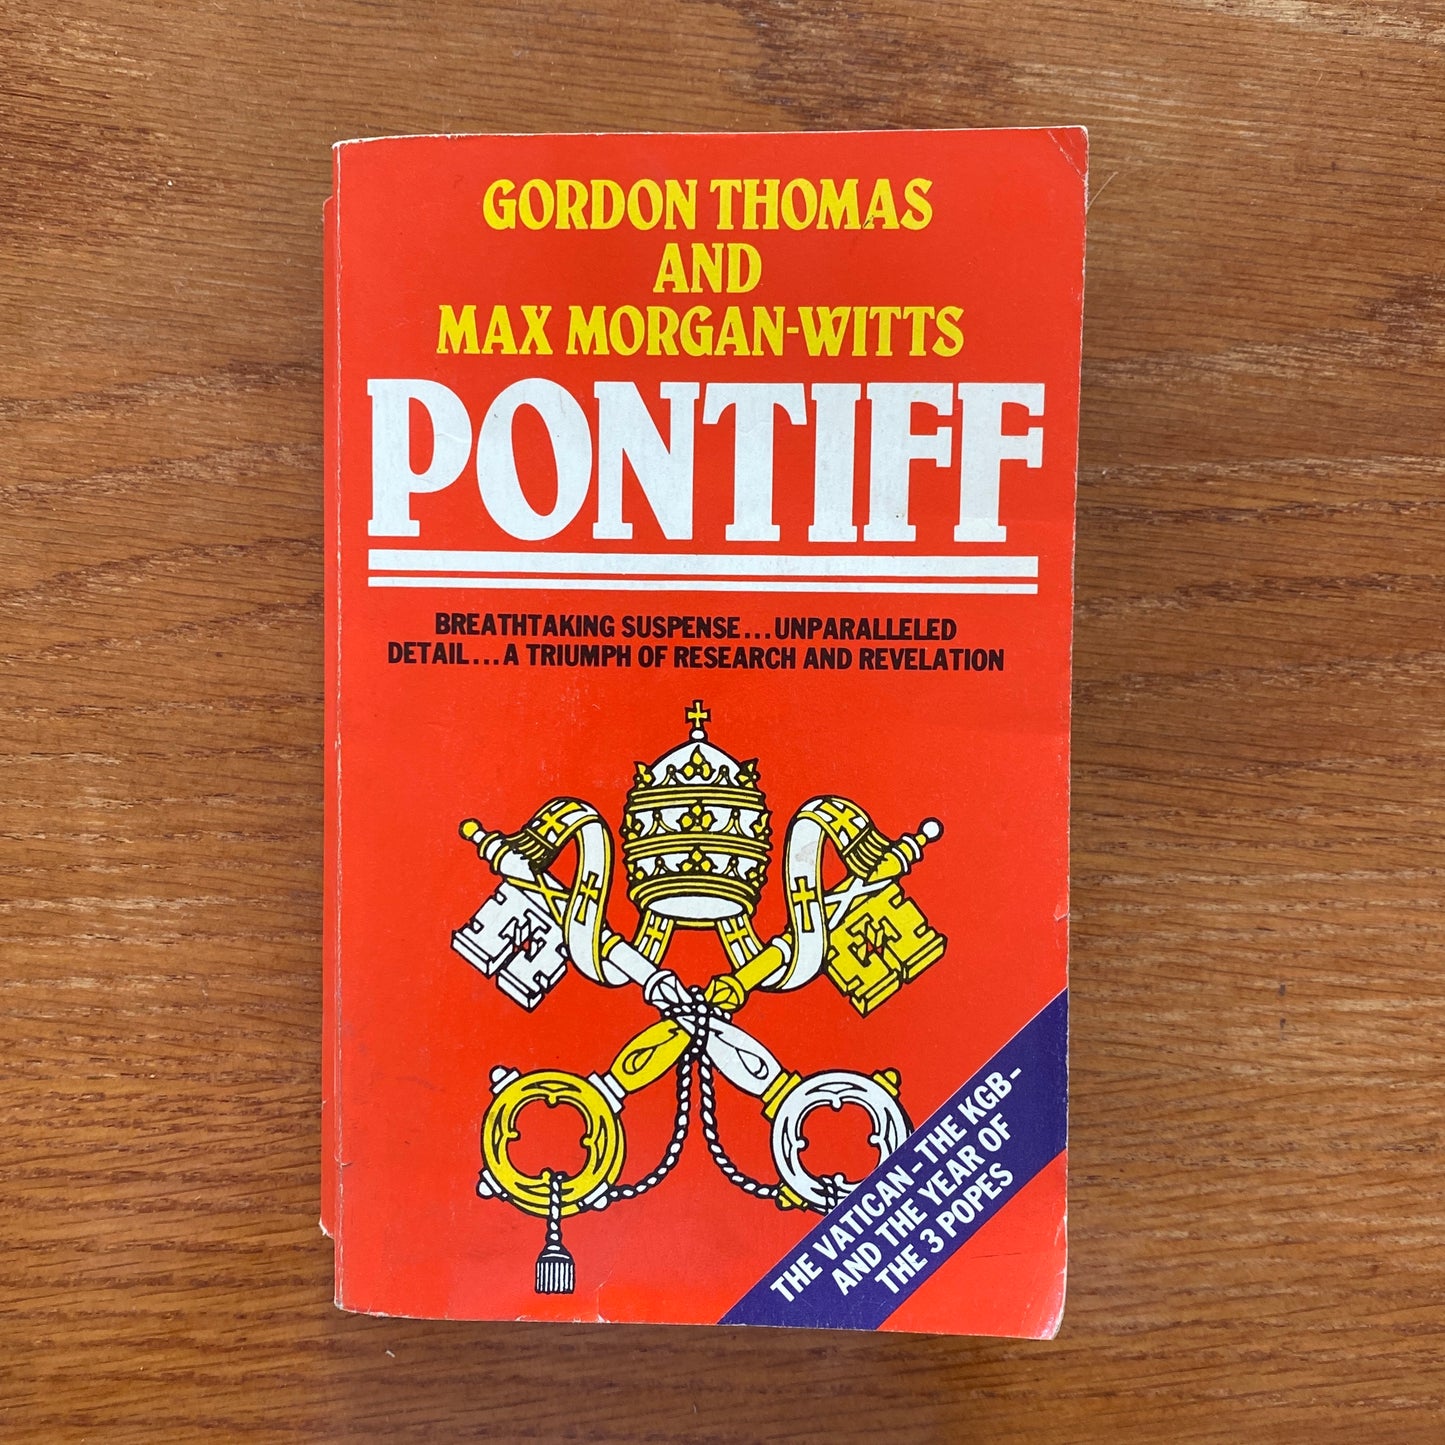 Pontiff - Gordon Thomas & Max Morgan-Whitts